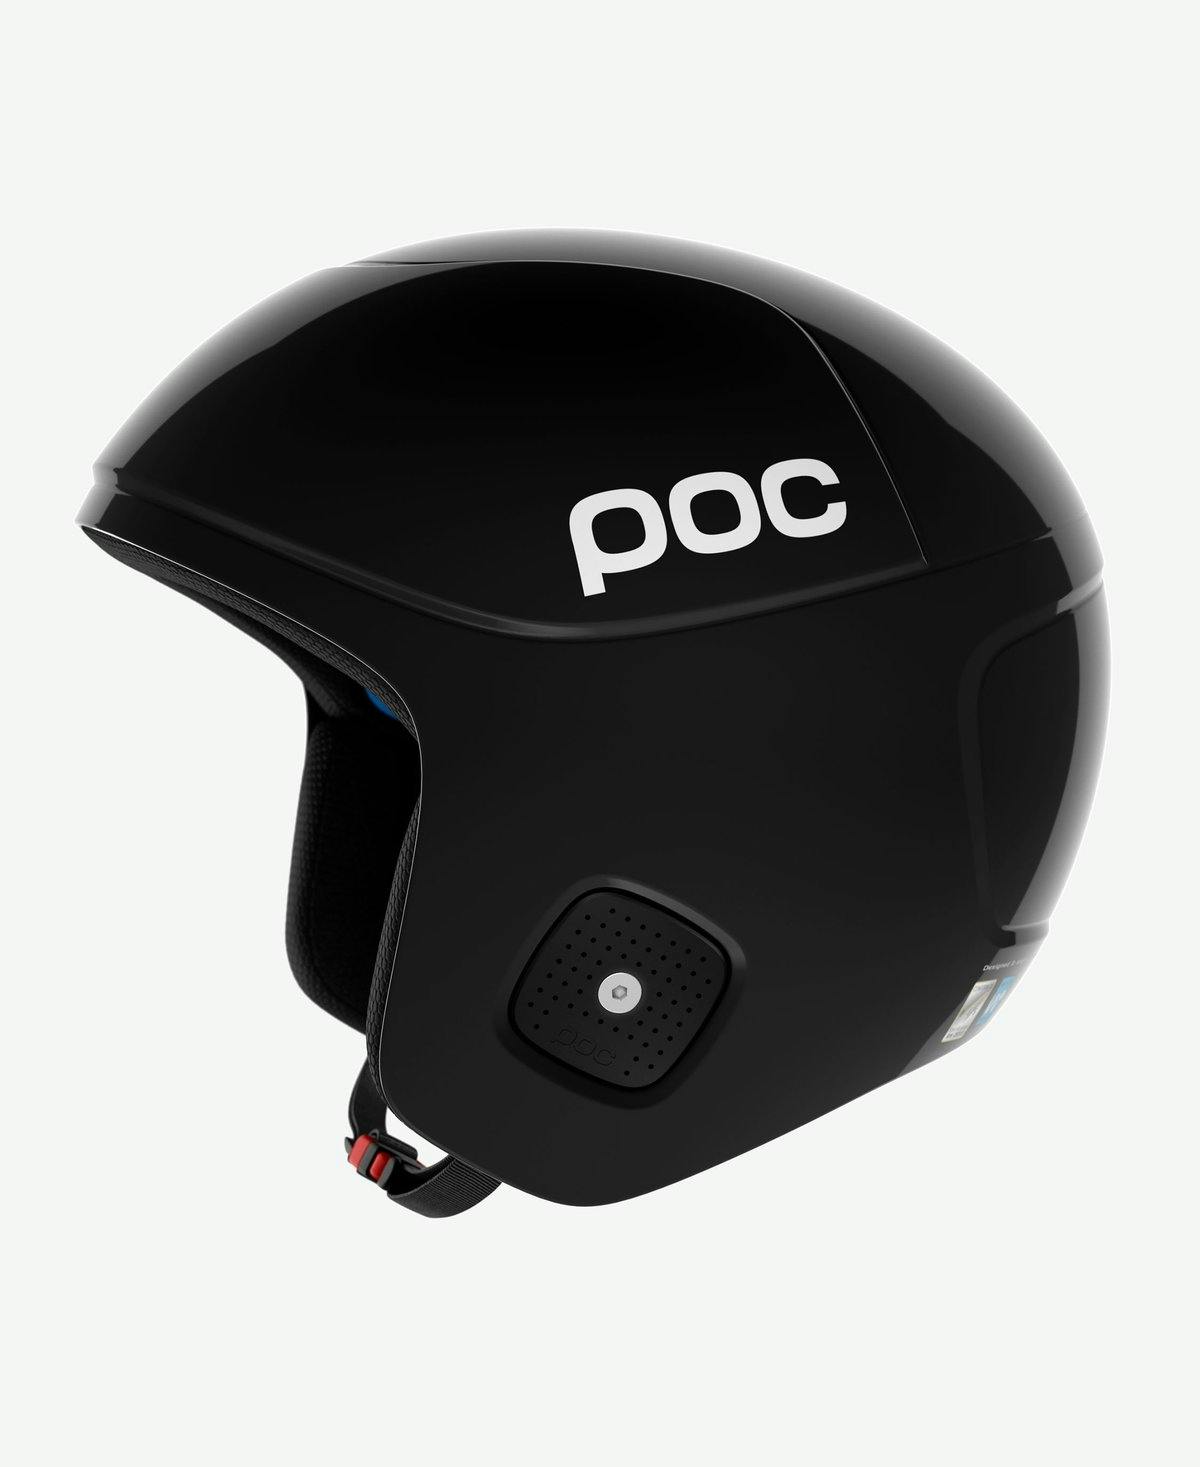 POC Skull Orbic X Spin Helmet